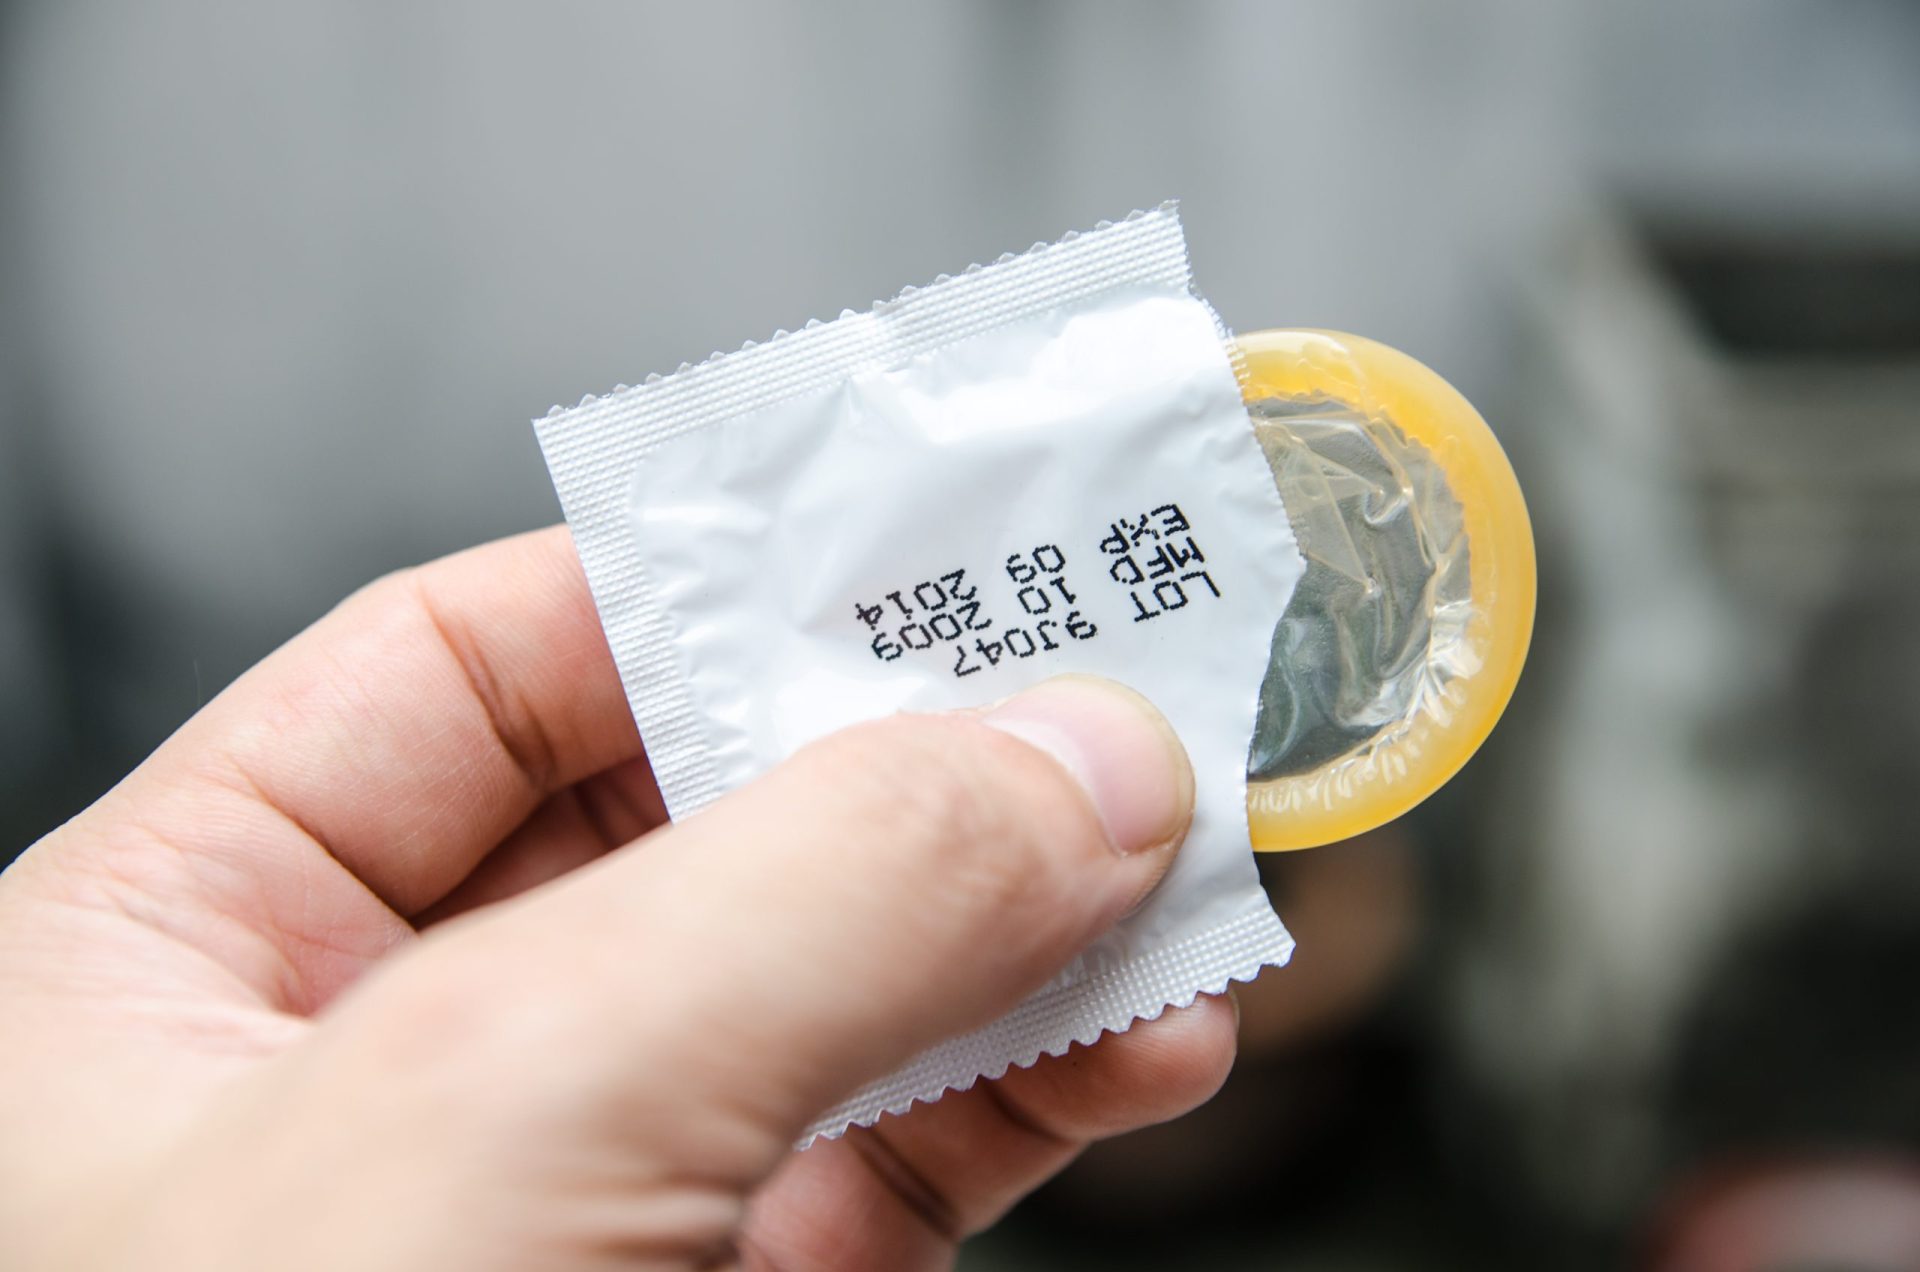 Os problemas de pôr o preservativo à pressa